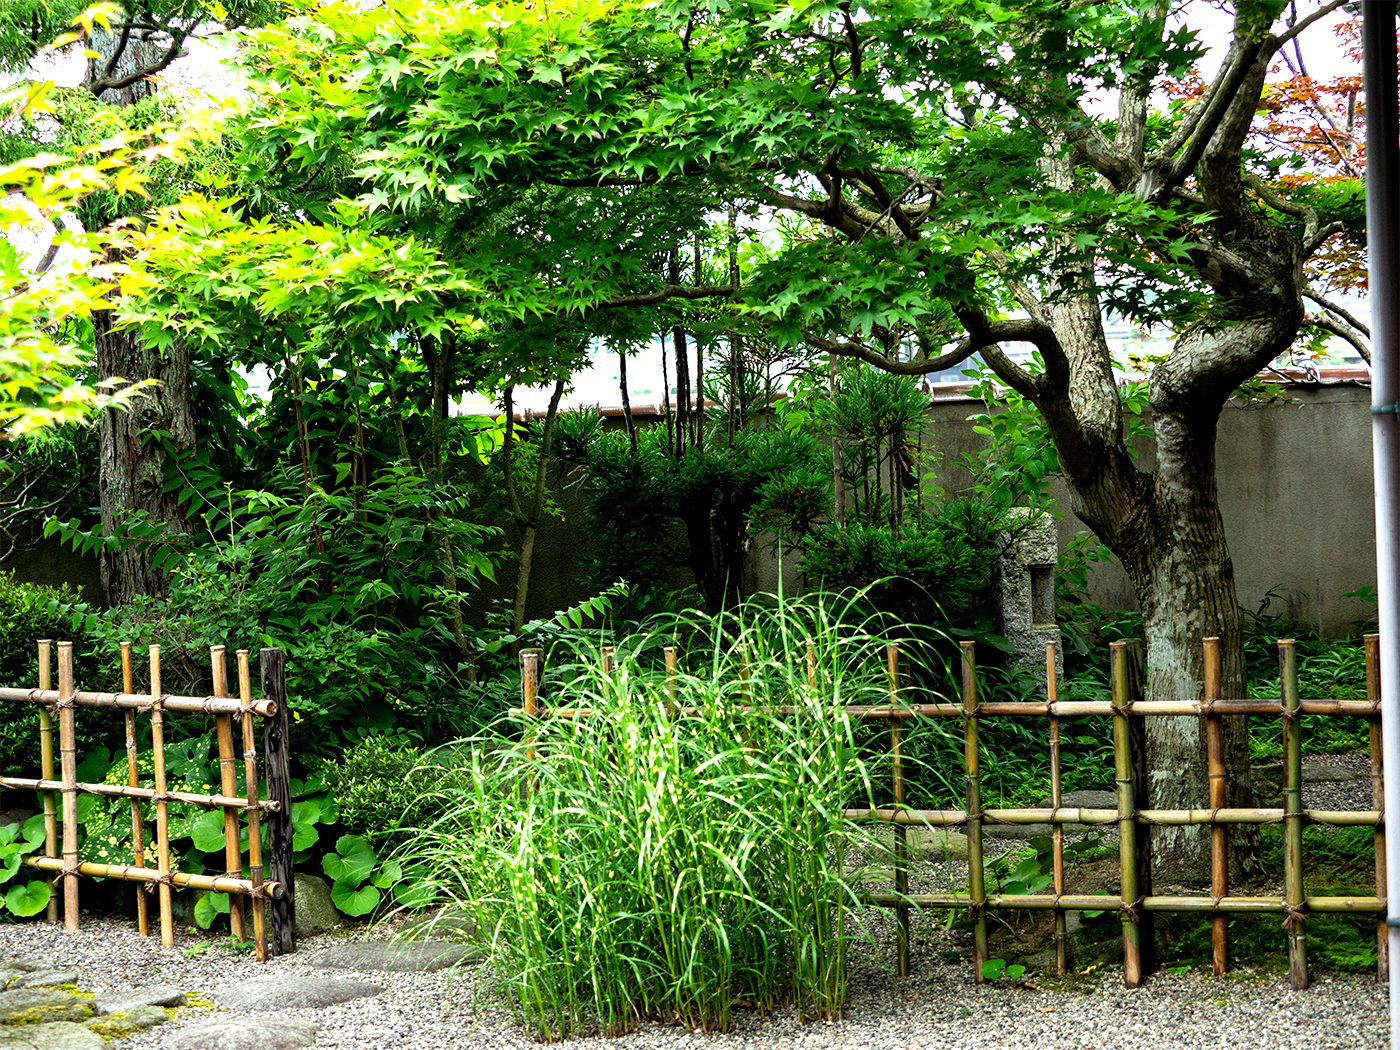 竹垣の奥、内露地には北山杉がみえ、奥には小宇宙が広がります。